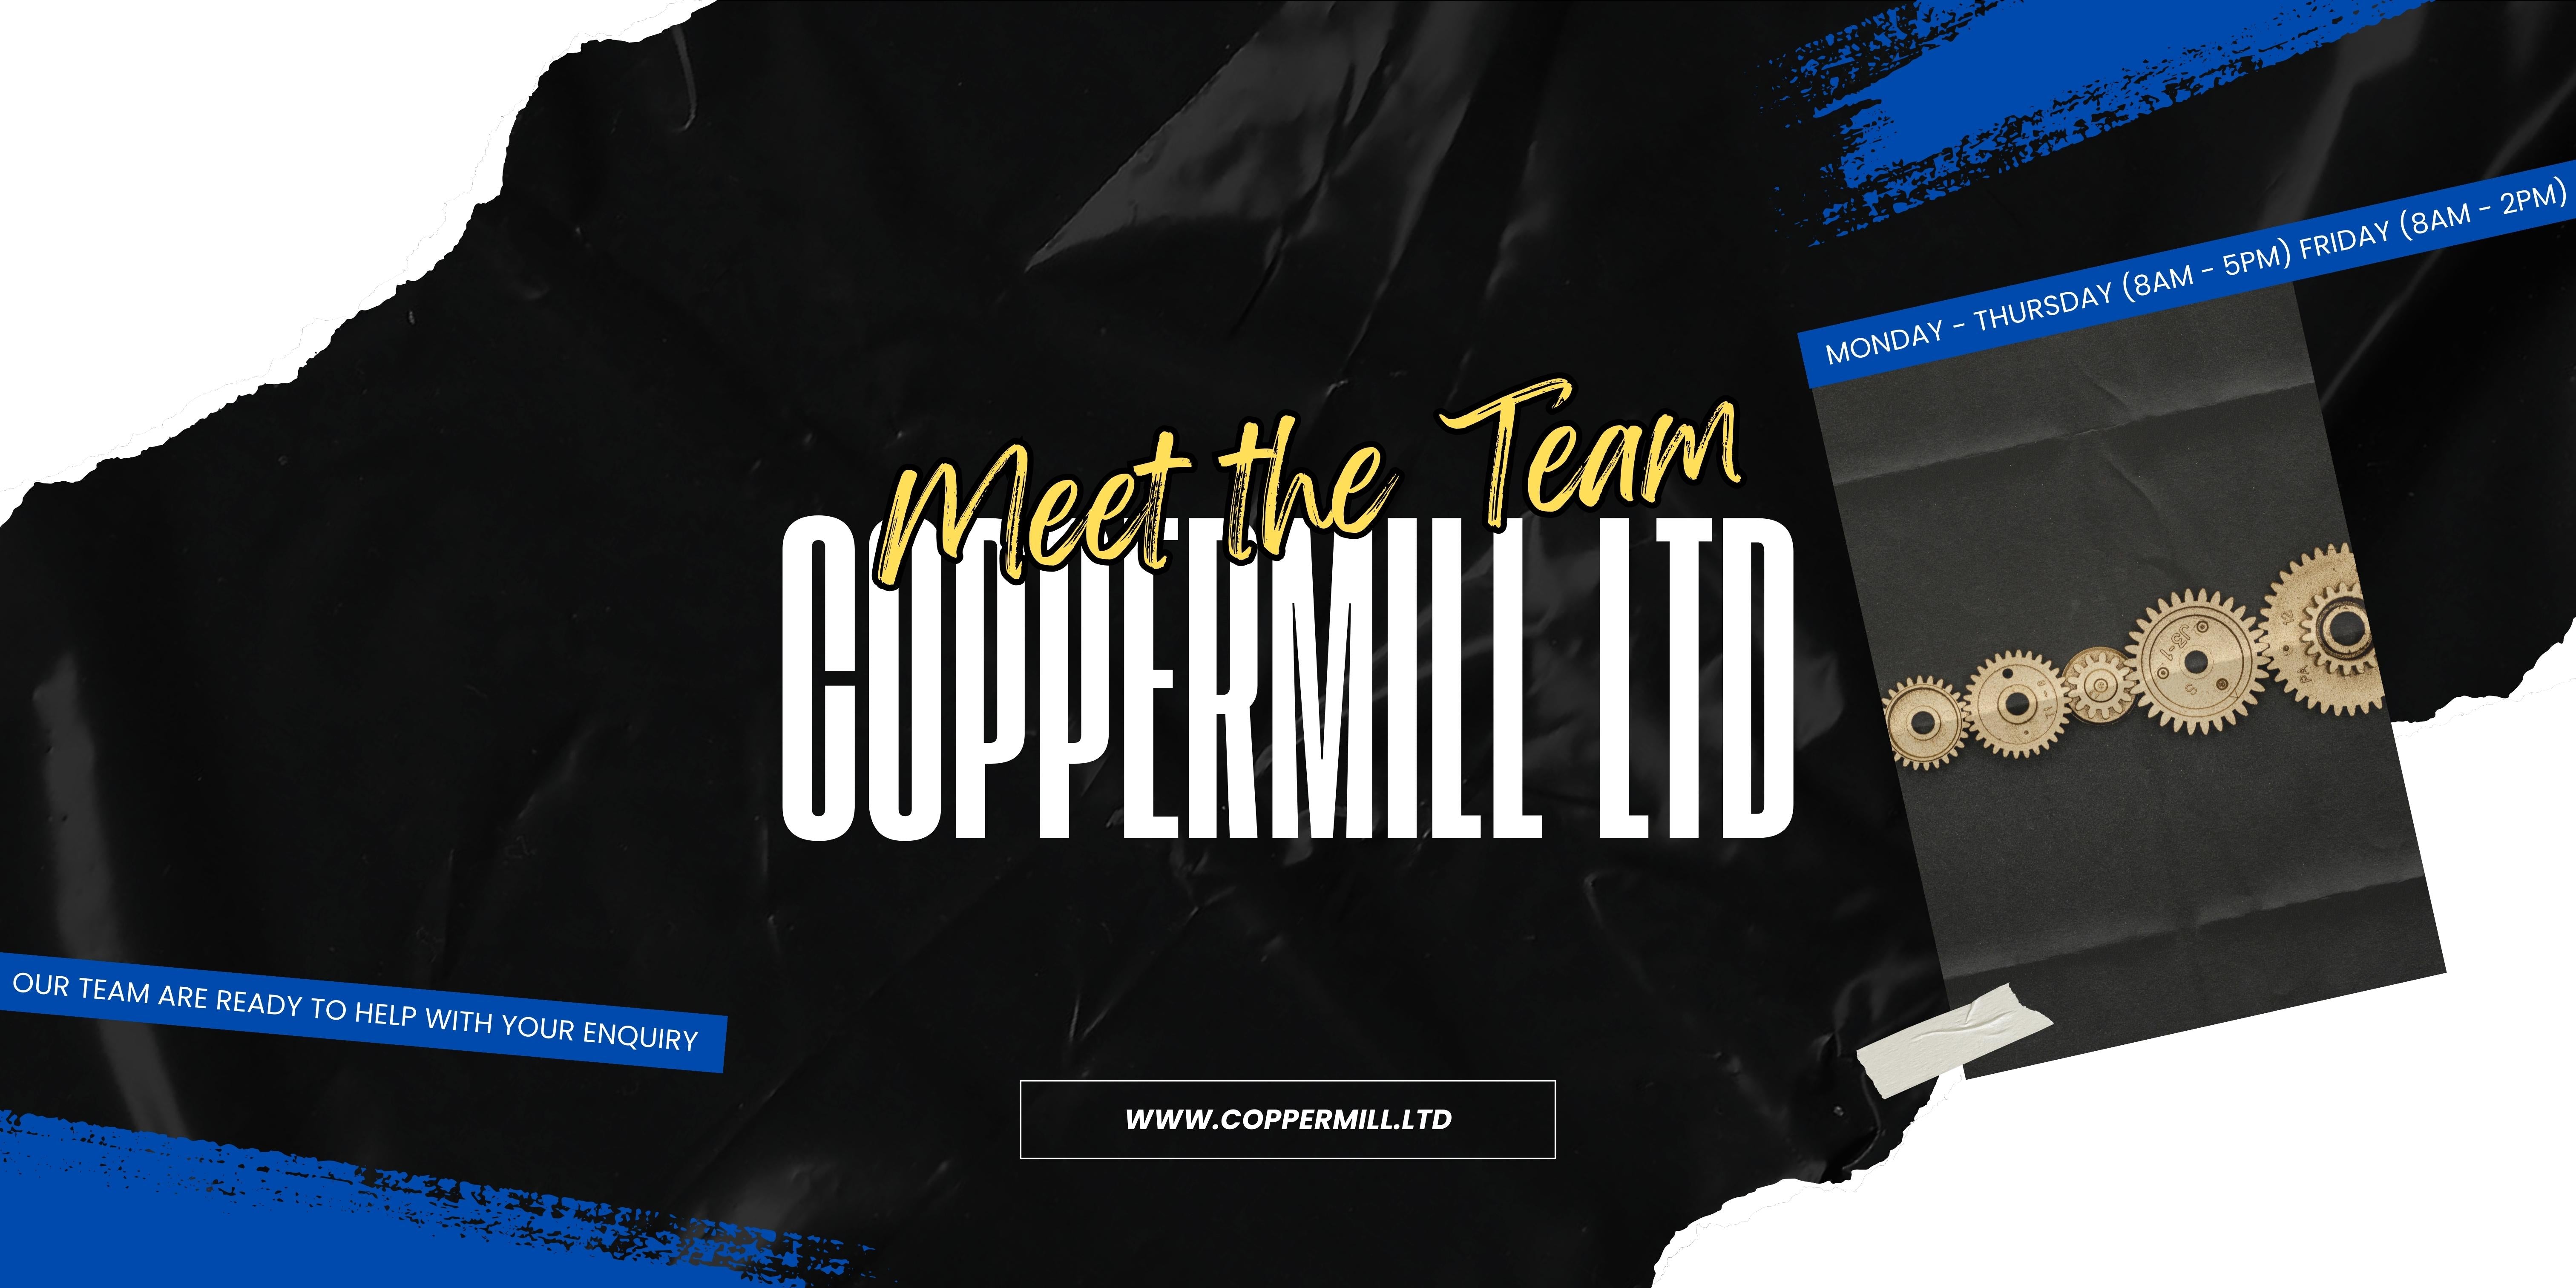 Coppermill Ltd Meet the Team